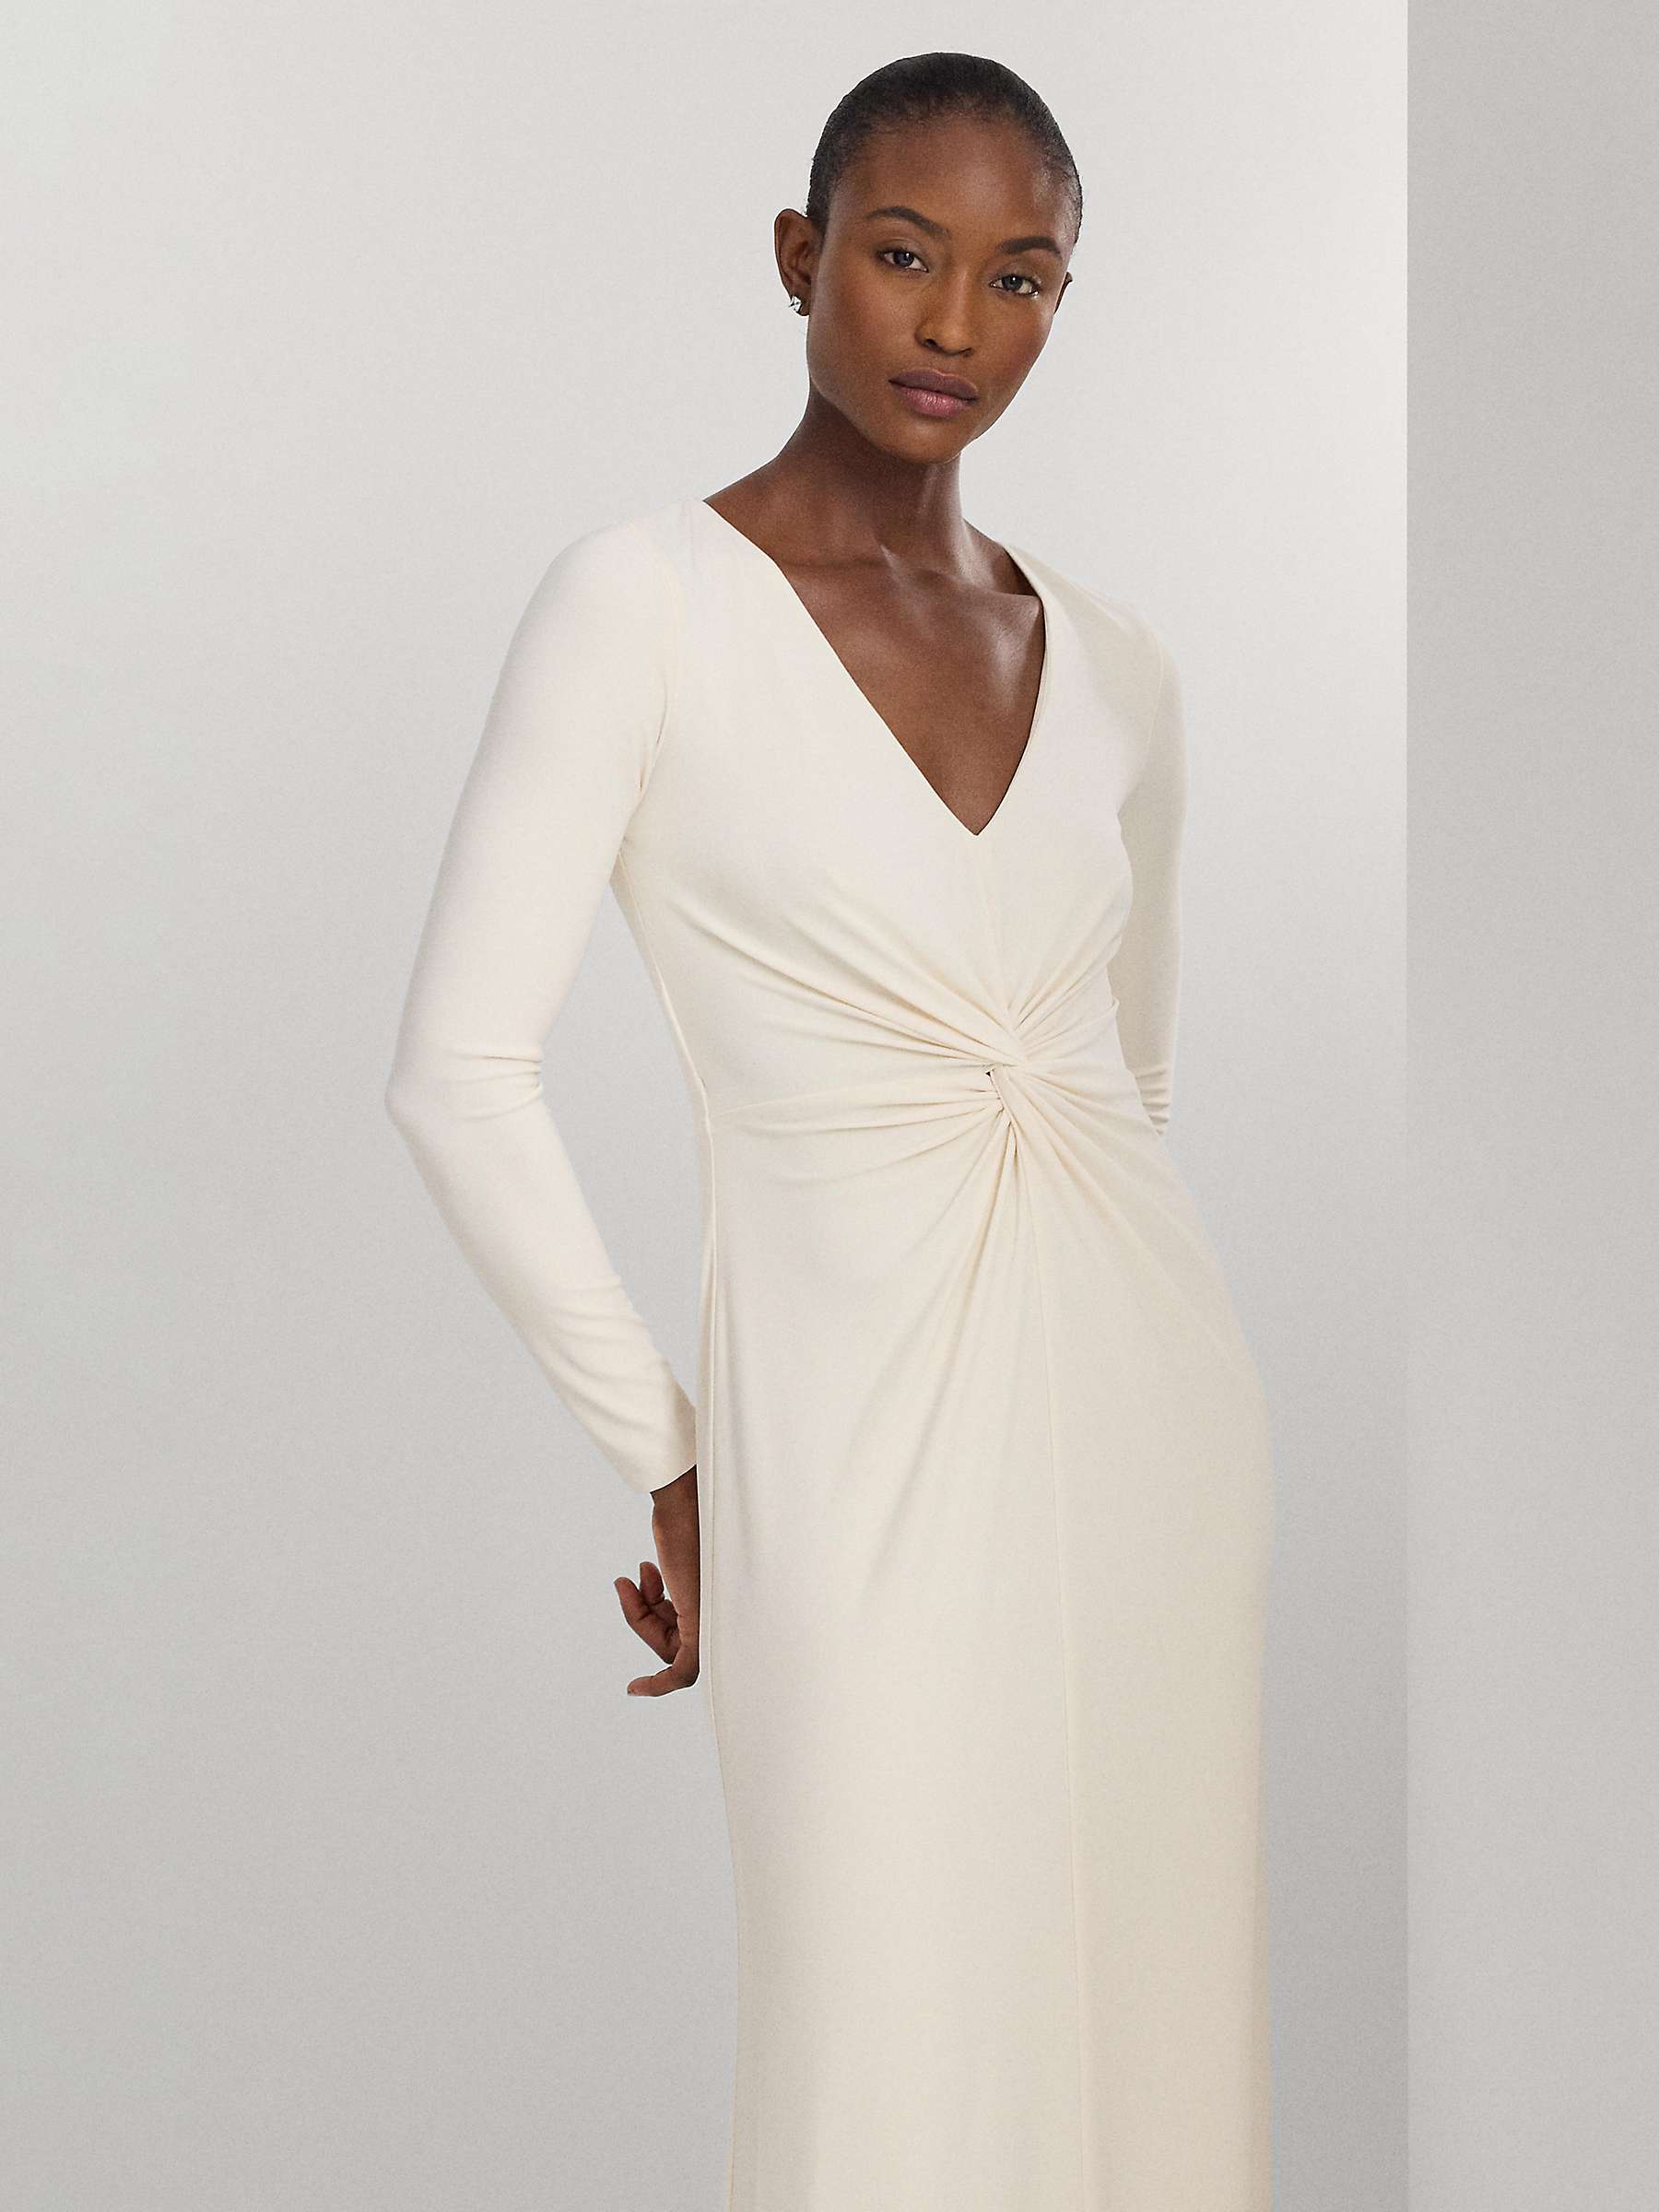 Buy Lauren Ralph Lauren Nadira Maxi Dress, Cream Online at johnlewis.com